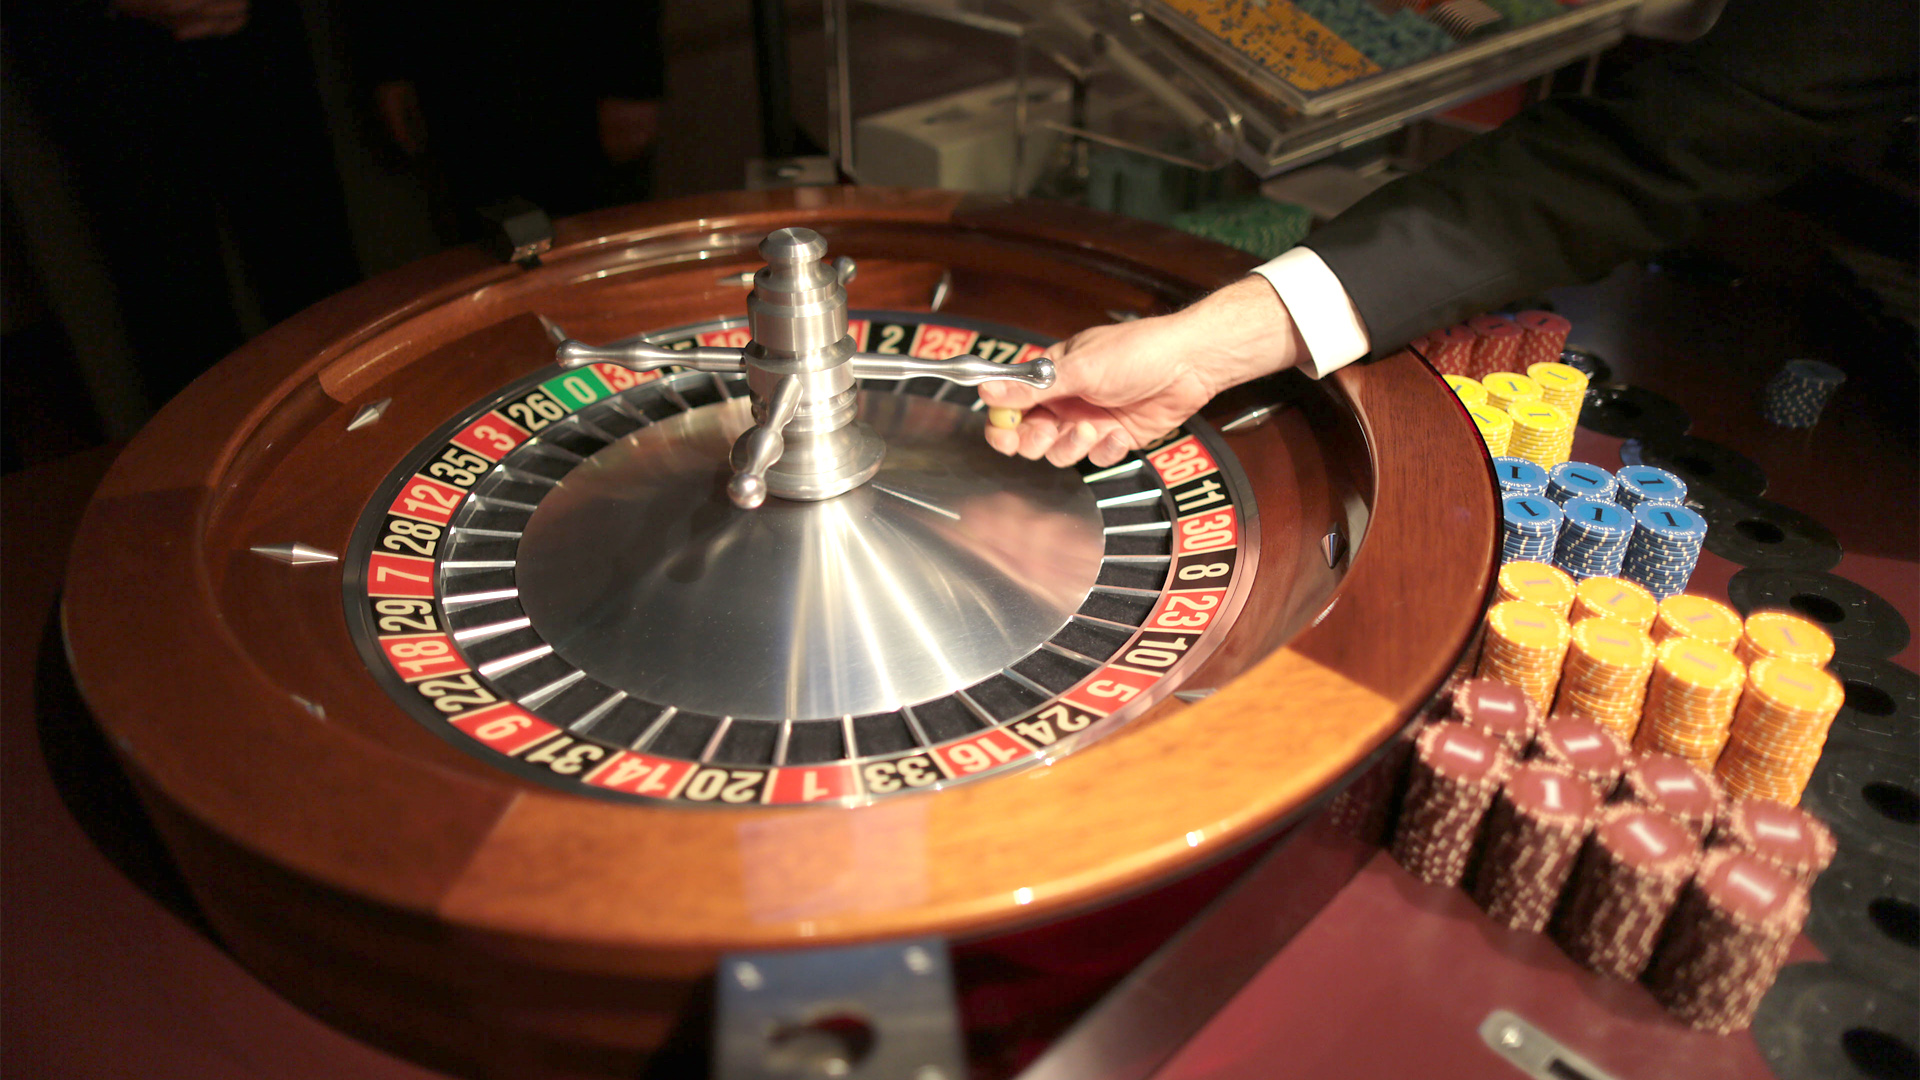 Roulettetisch in einem Casino | picture alliance / dpa